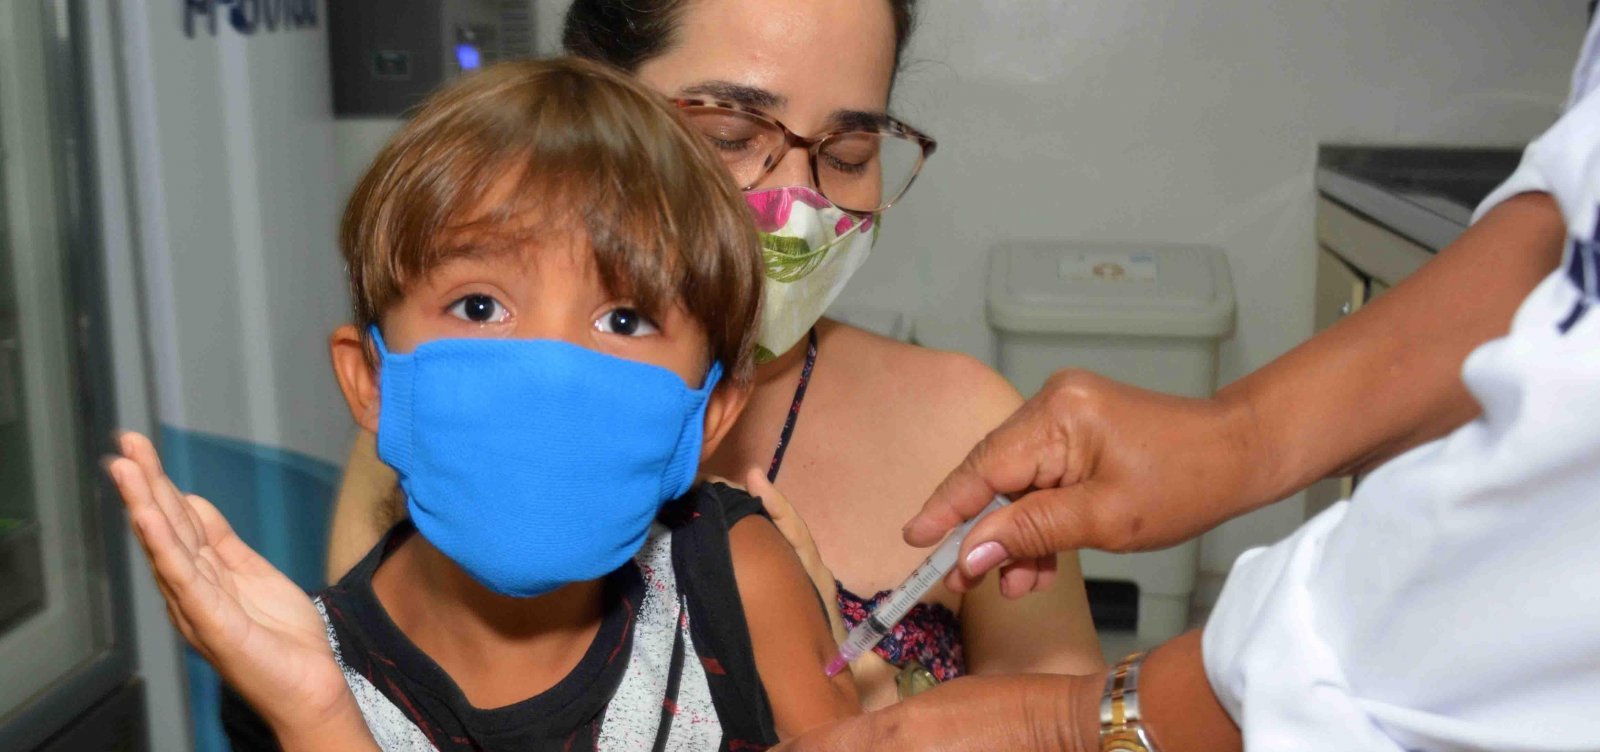 Secretária da Covid contraria Bolsonaro e diz que vacina para criança é segura